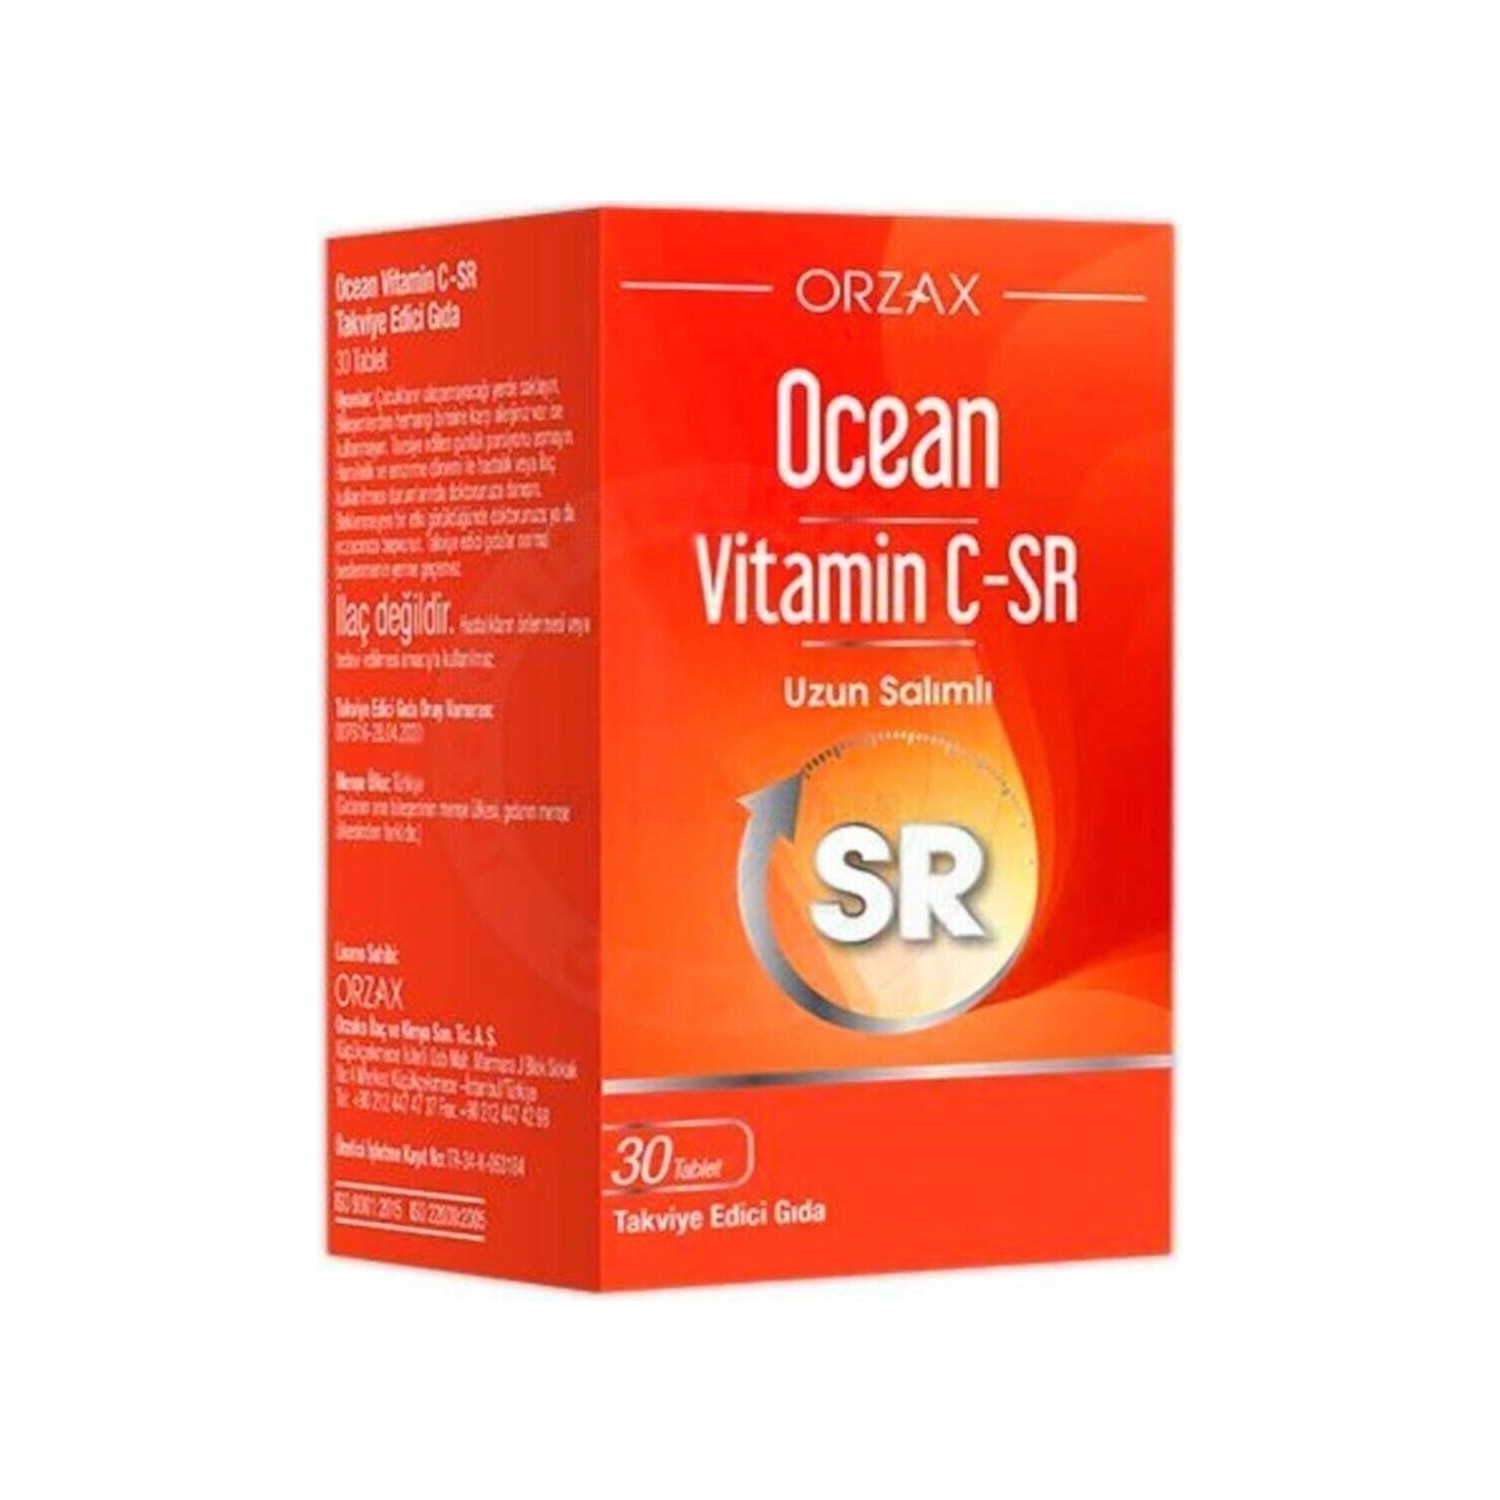 цена Витамин C-Sr Ocean 500 мг, 30 таблеток